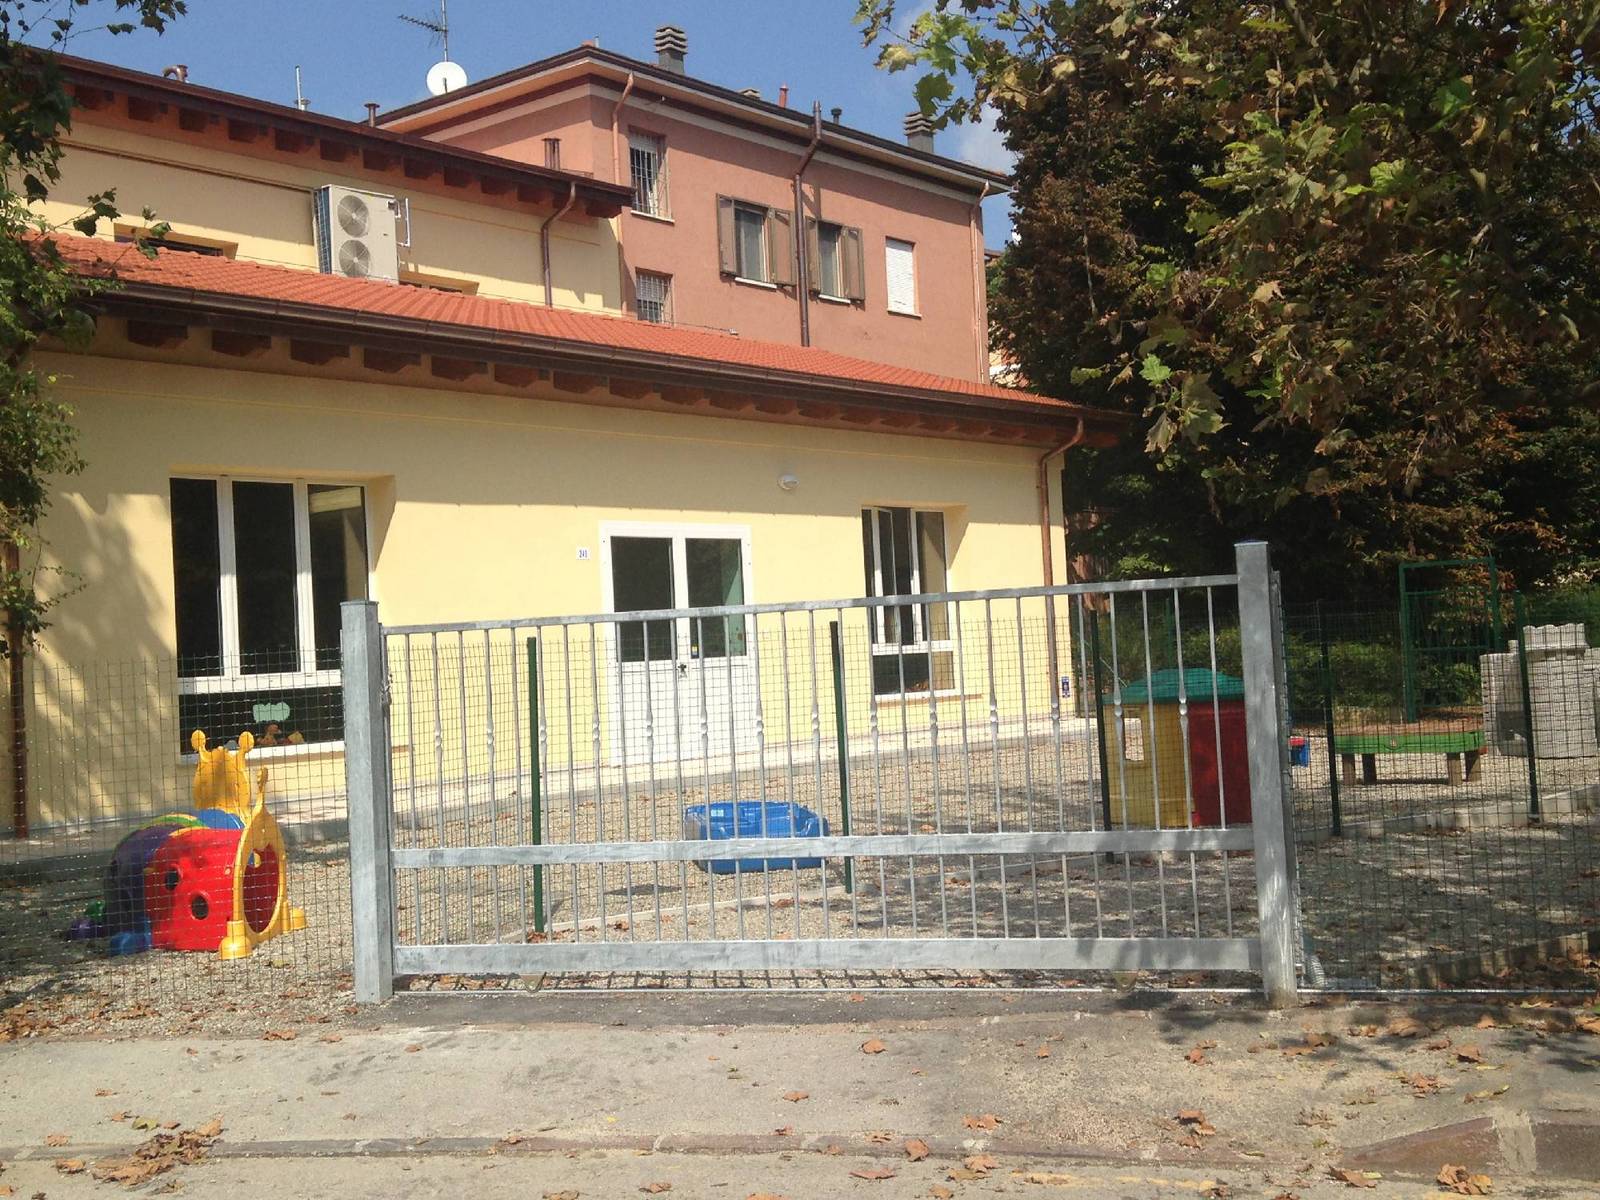 Scuola materna - Modena